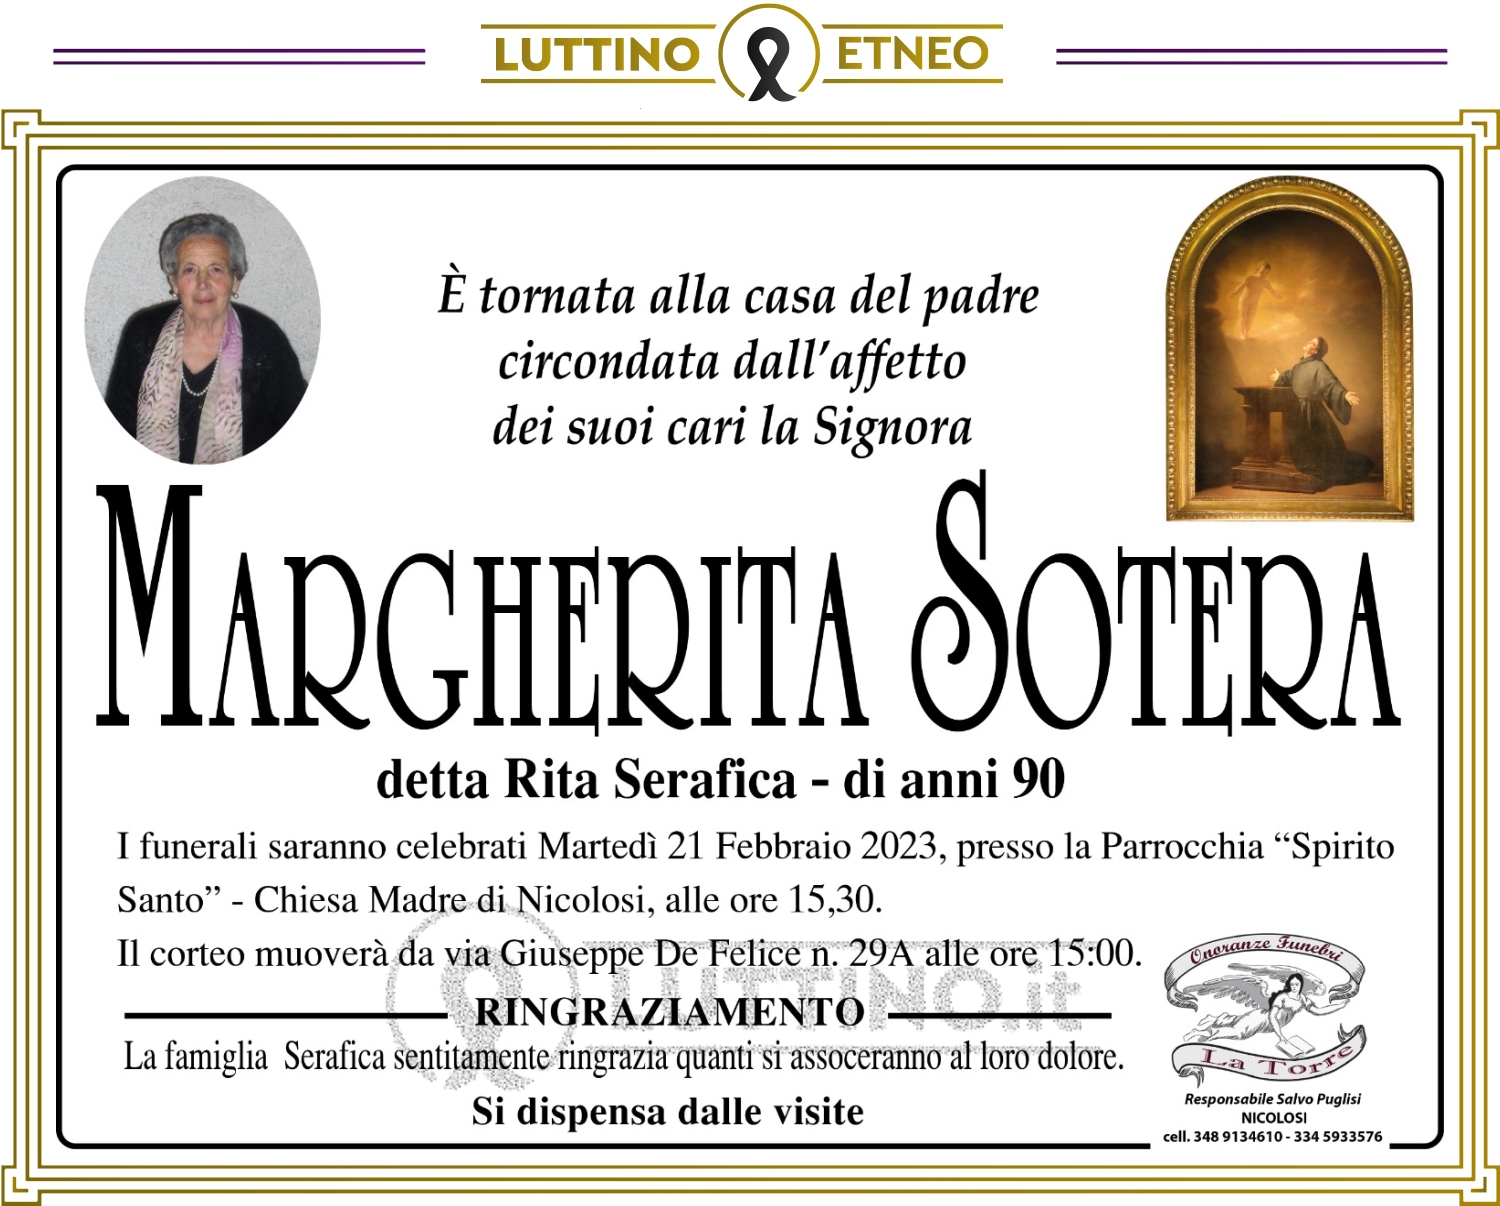 Margherita Sotera